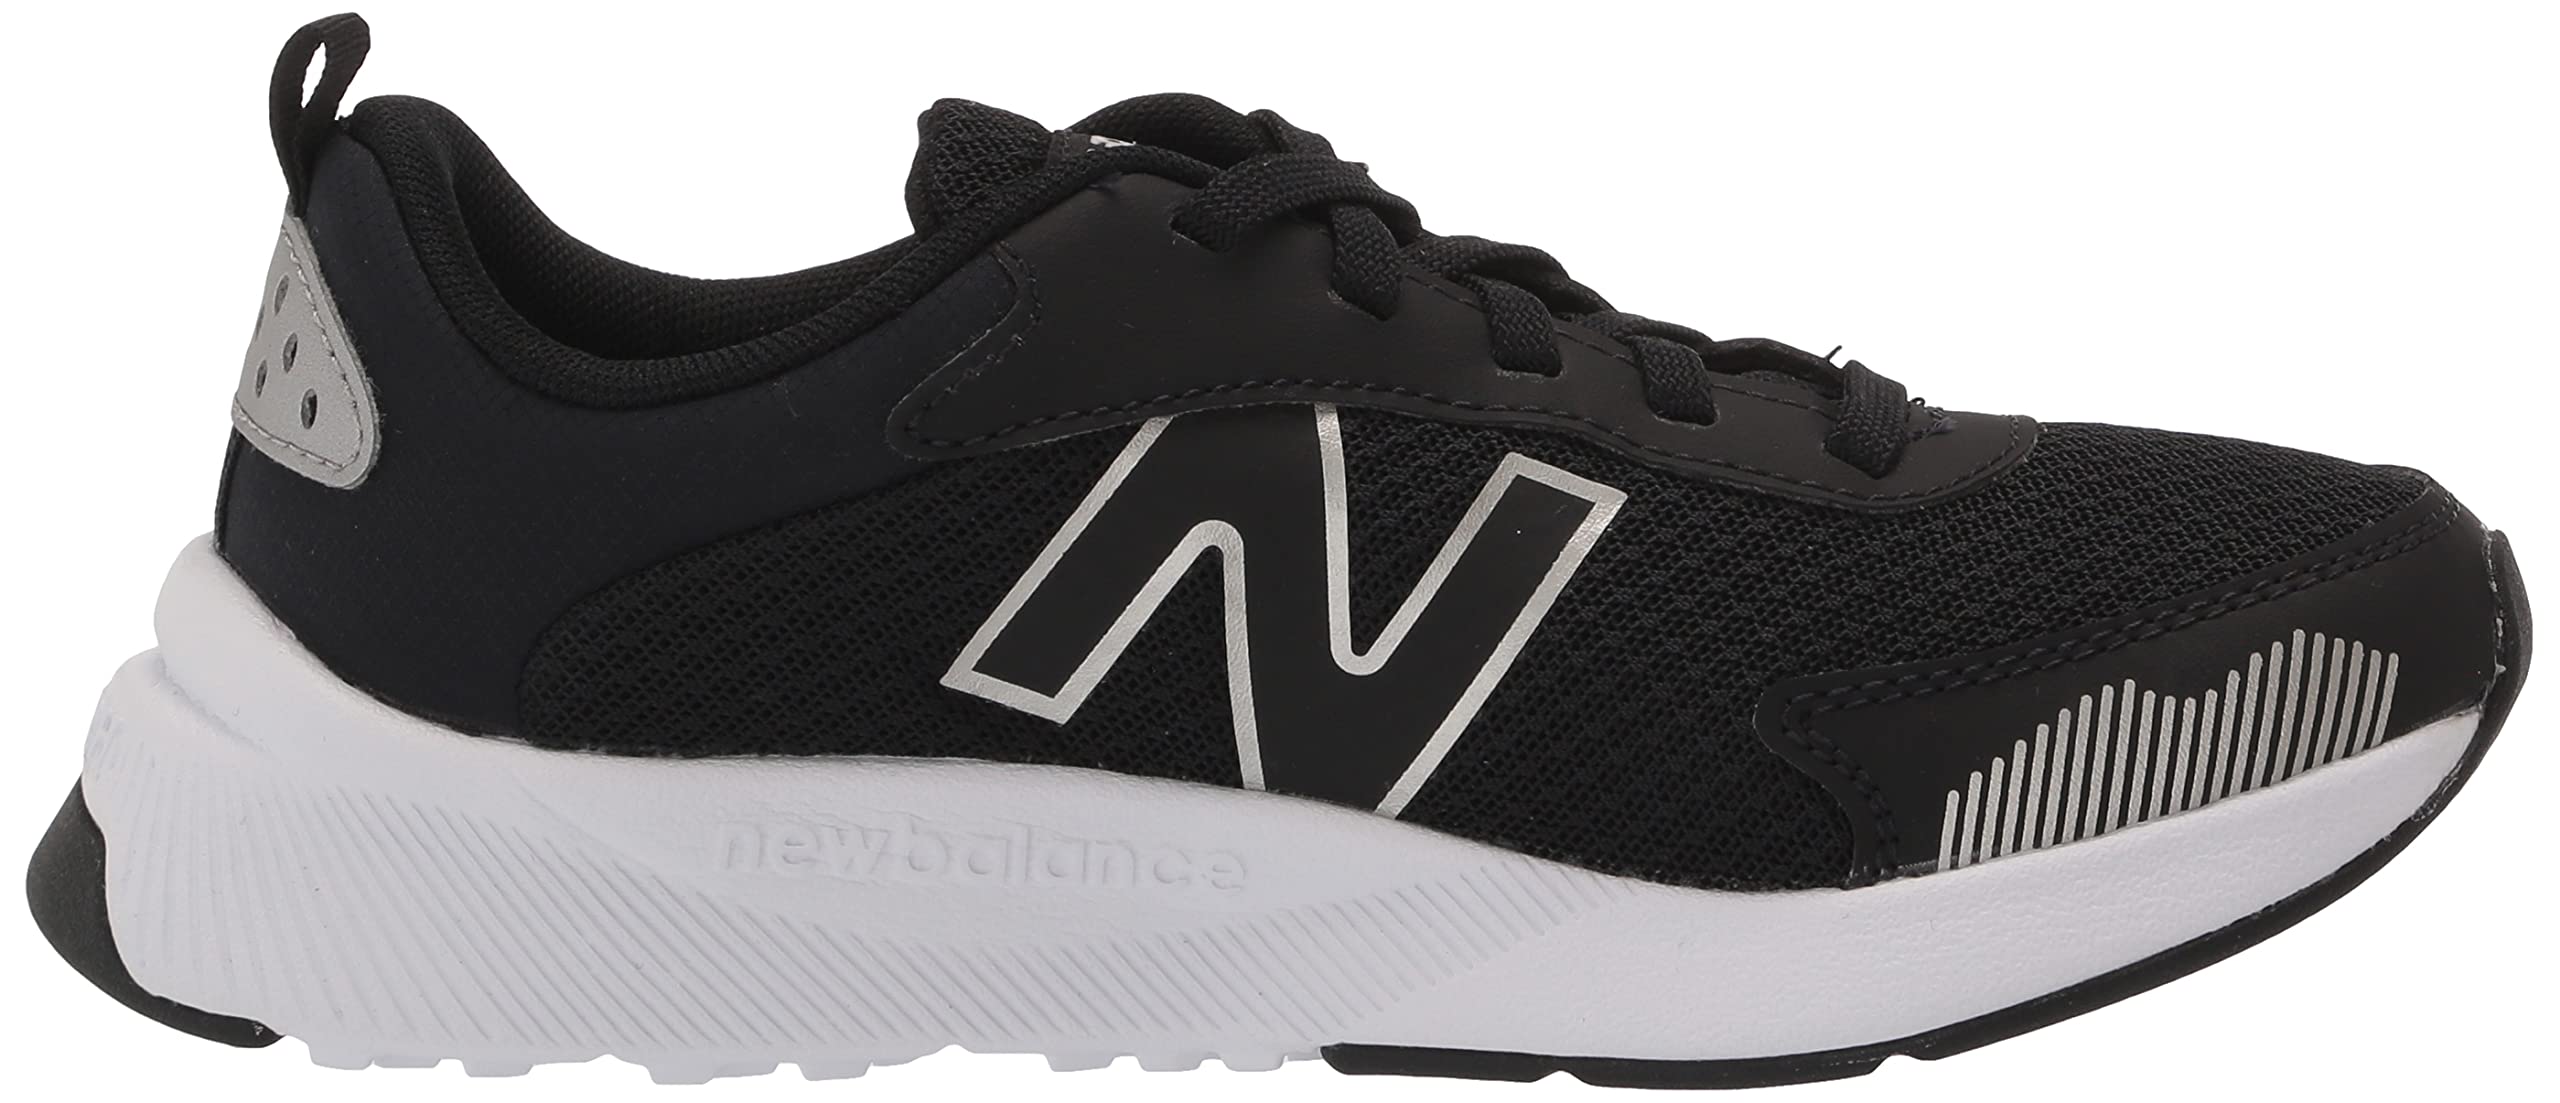 New Balance Kid's DynaSoft 545 V1 Lace-Up Running Shoe